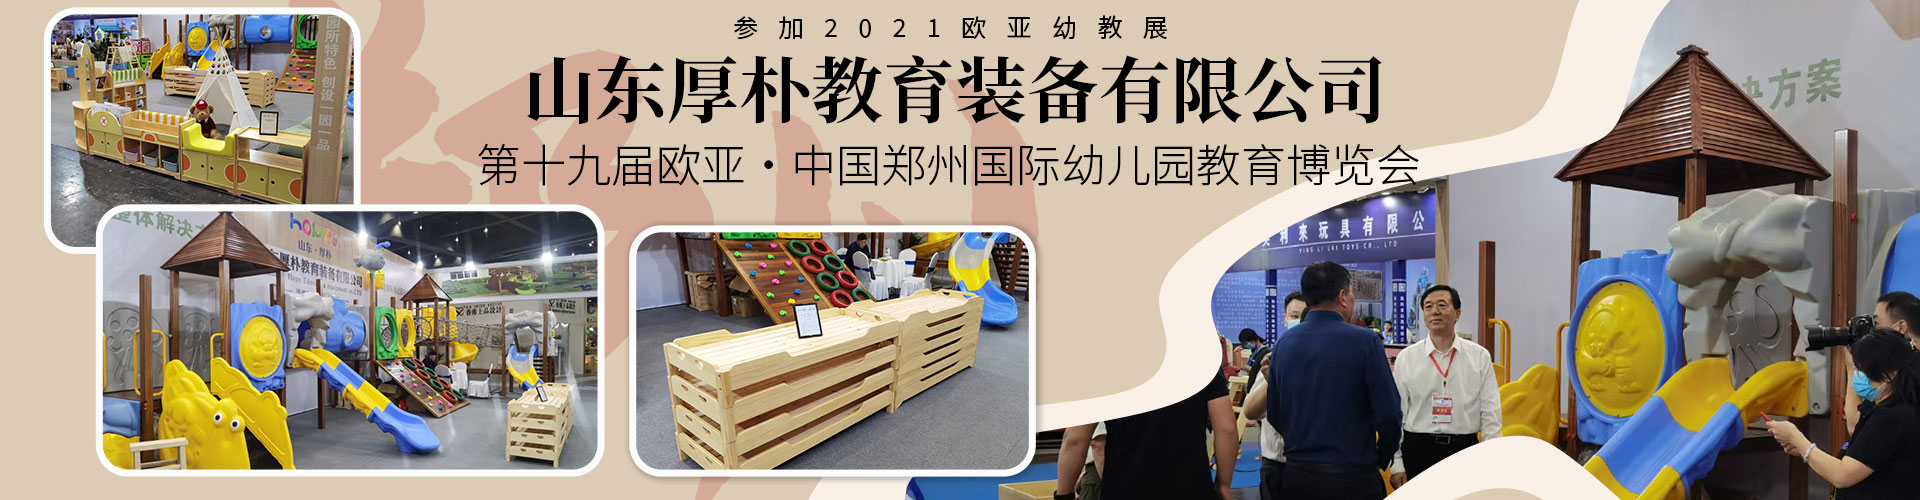 第23届北京国际幼教用品展览会-澳门十大网赌最新排名装备盛况